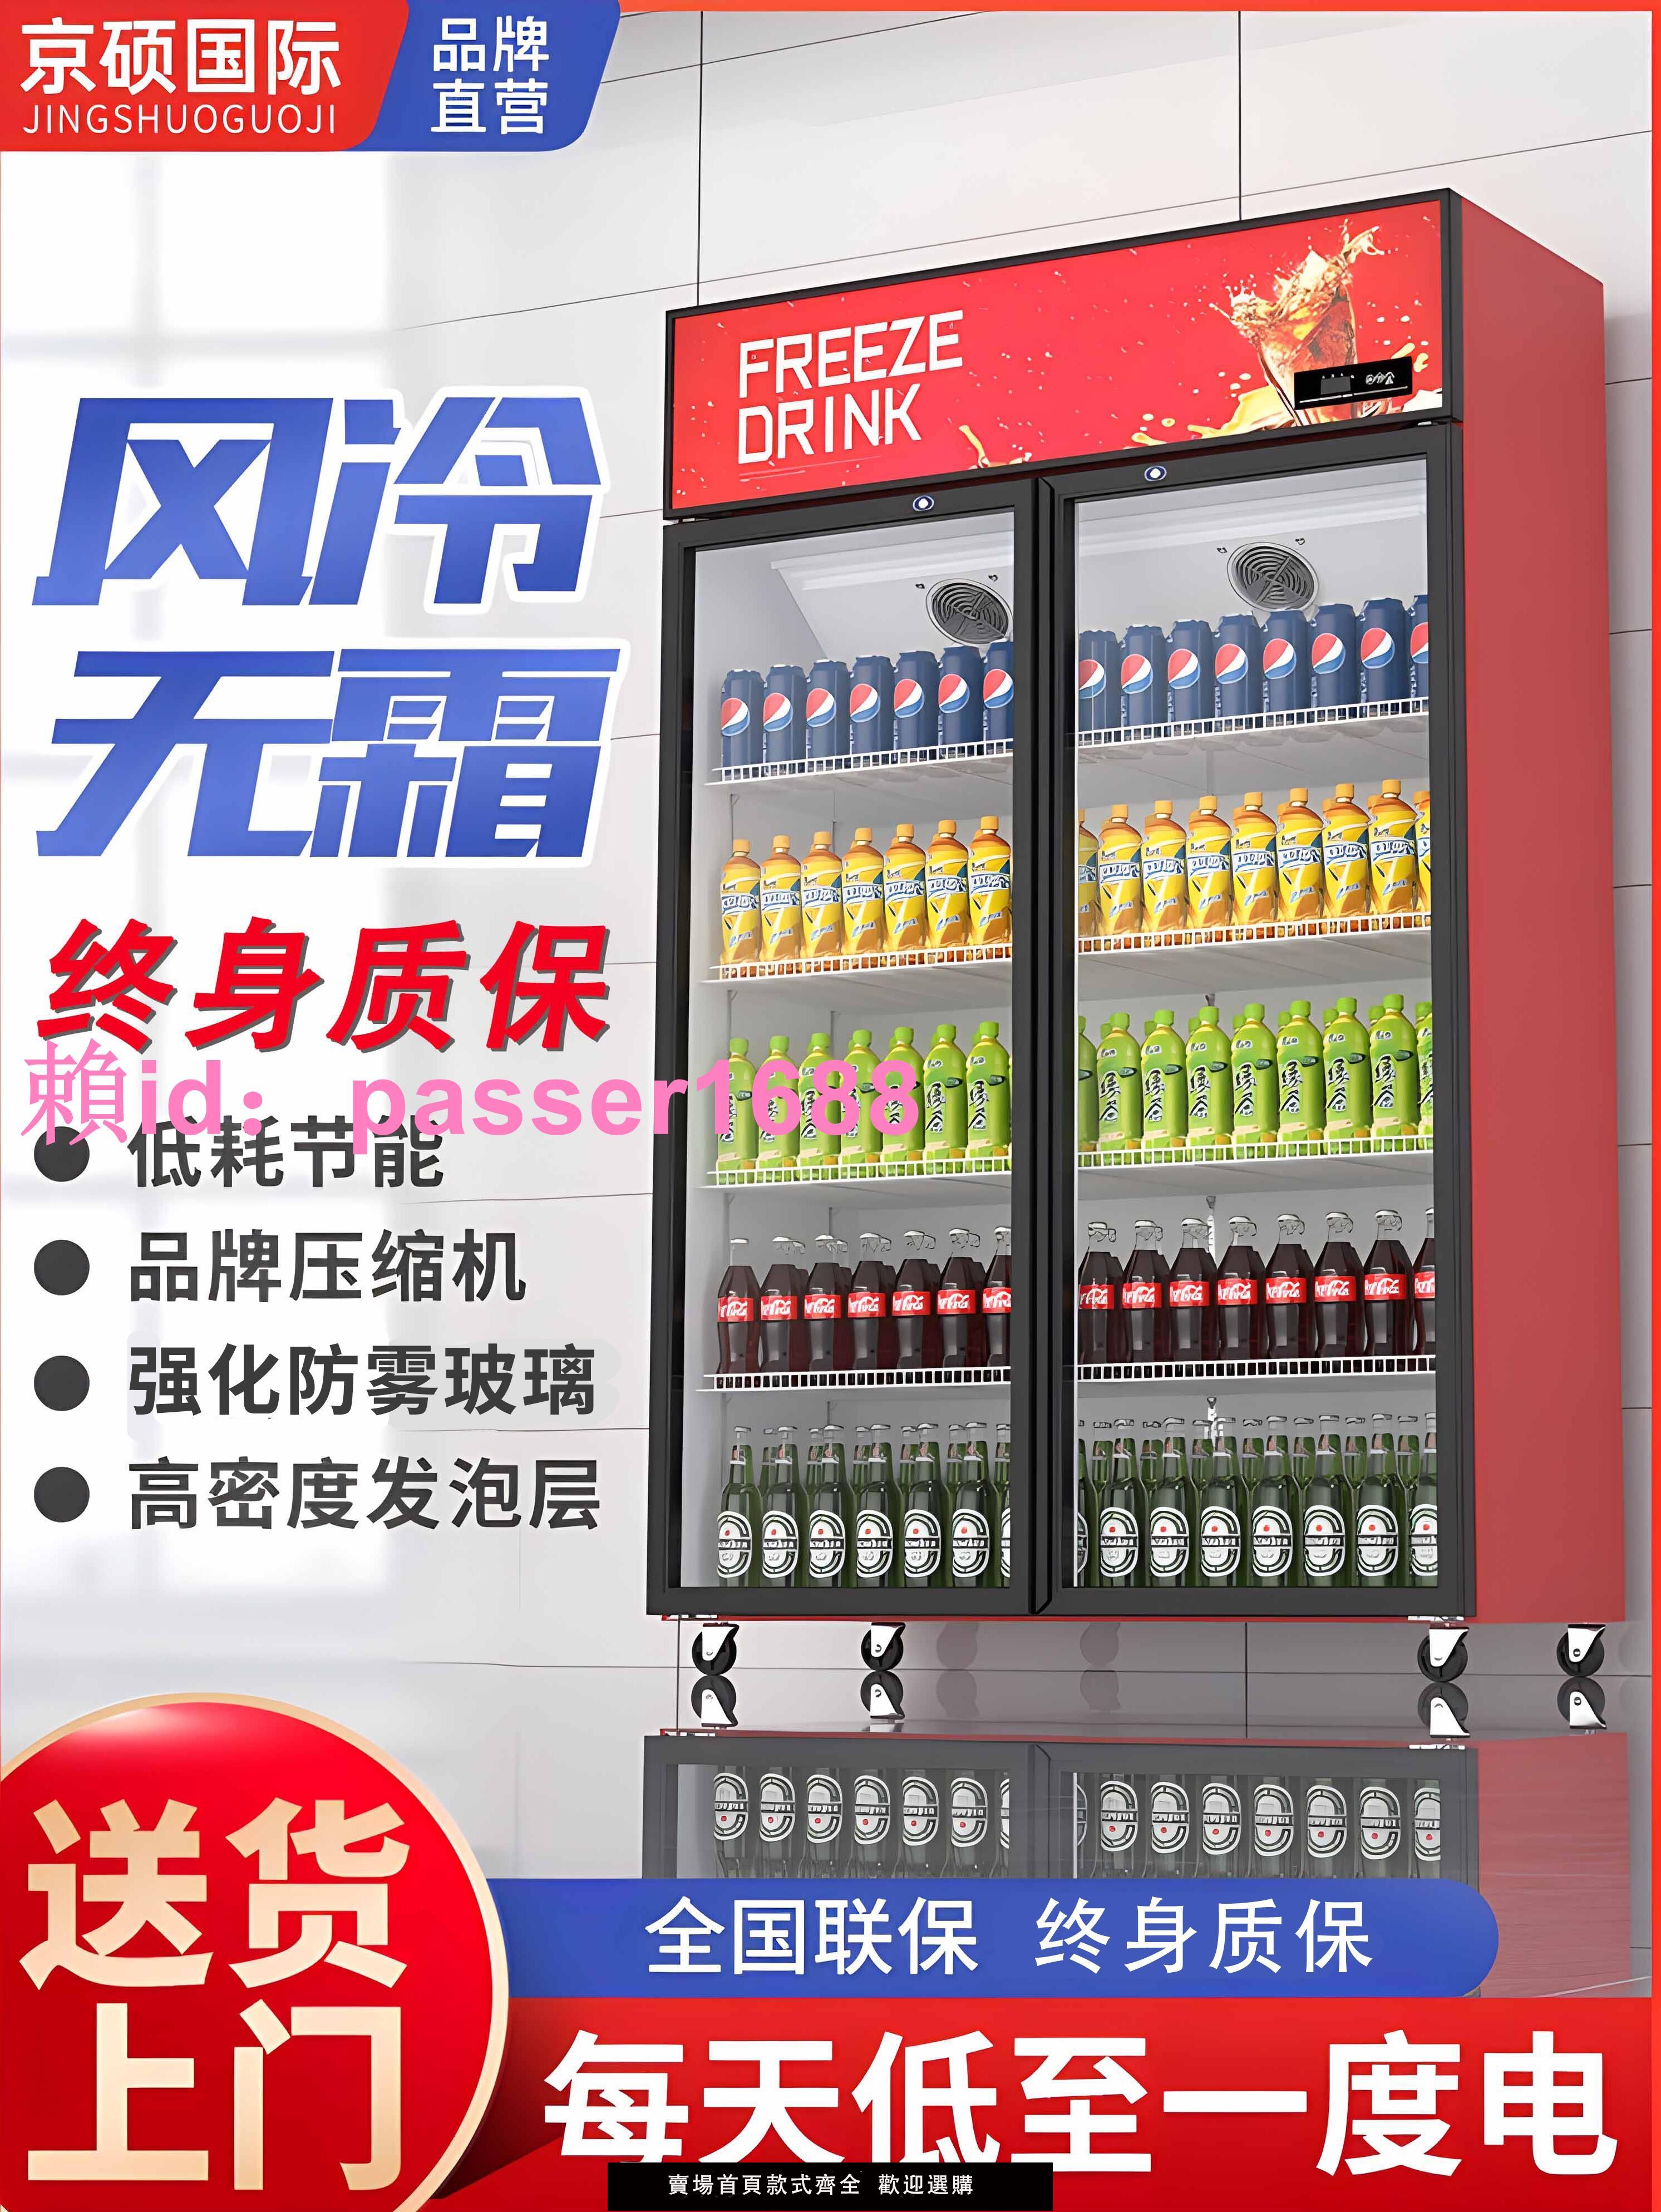 飲料柜商用冷藏展示柜超市冰箱啤酒柜立式保鮮柜風冷無霜雙門冰箱